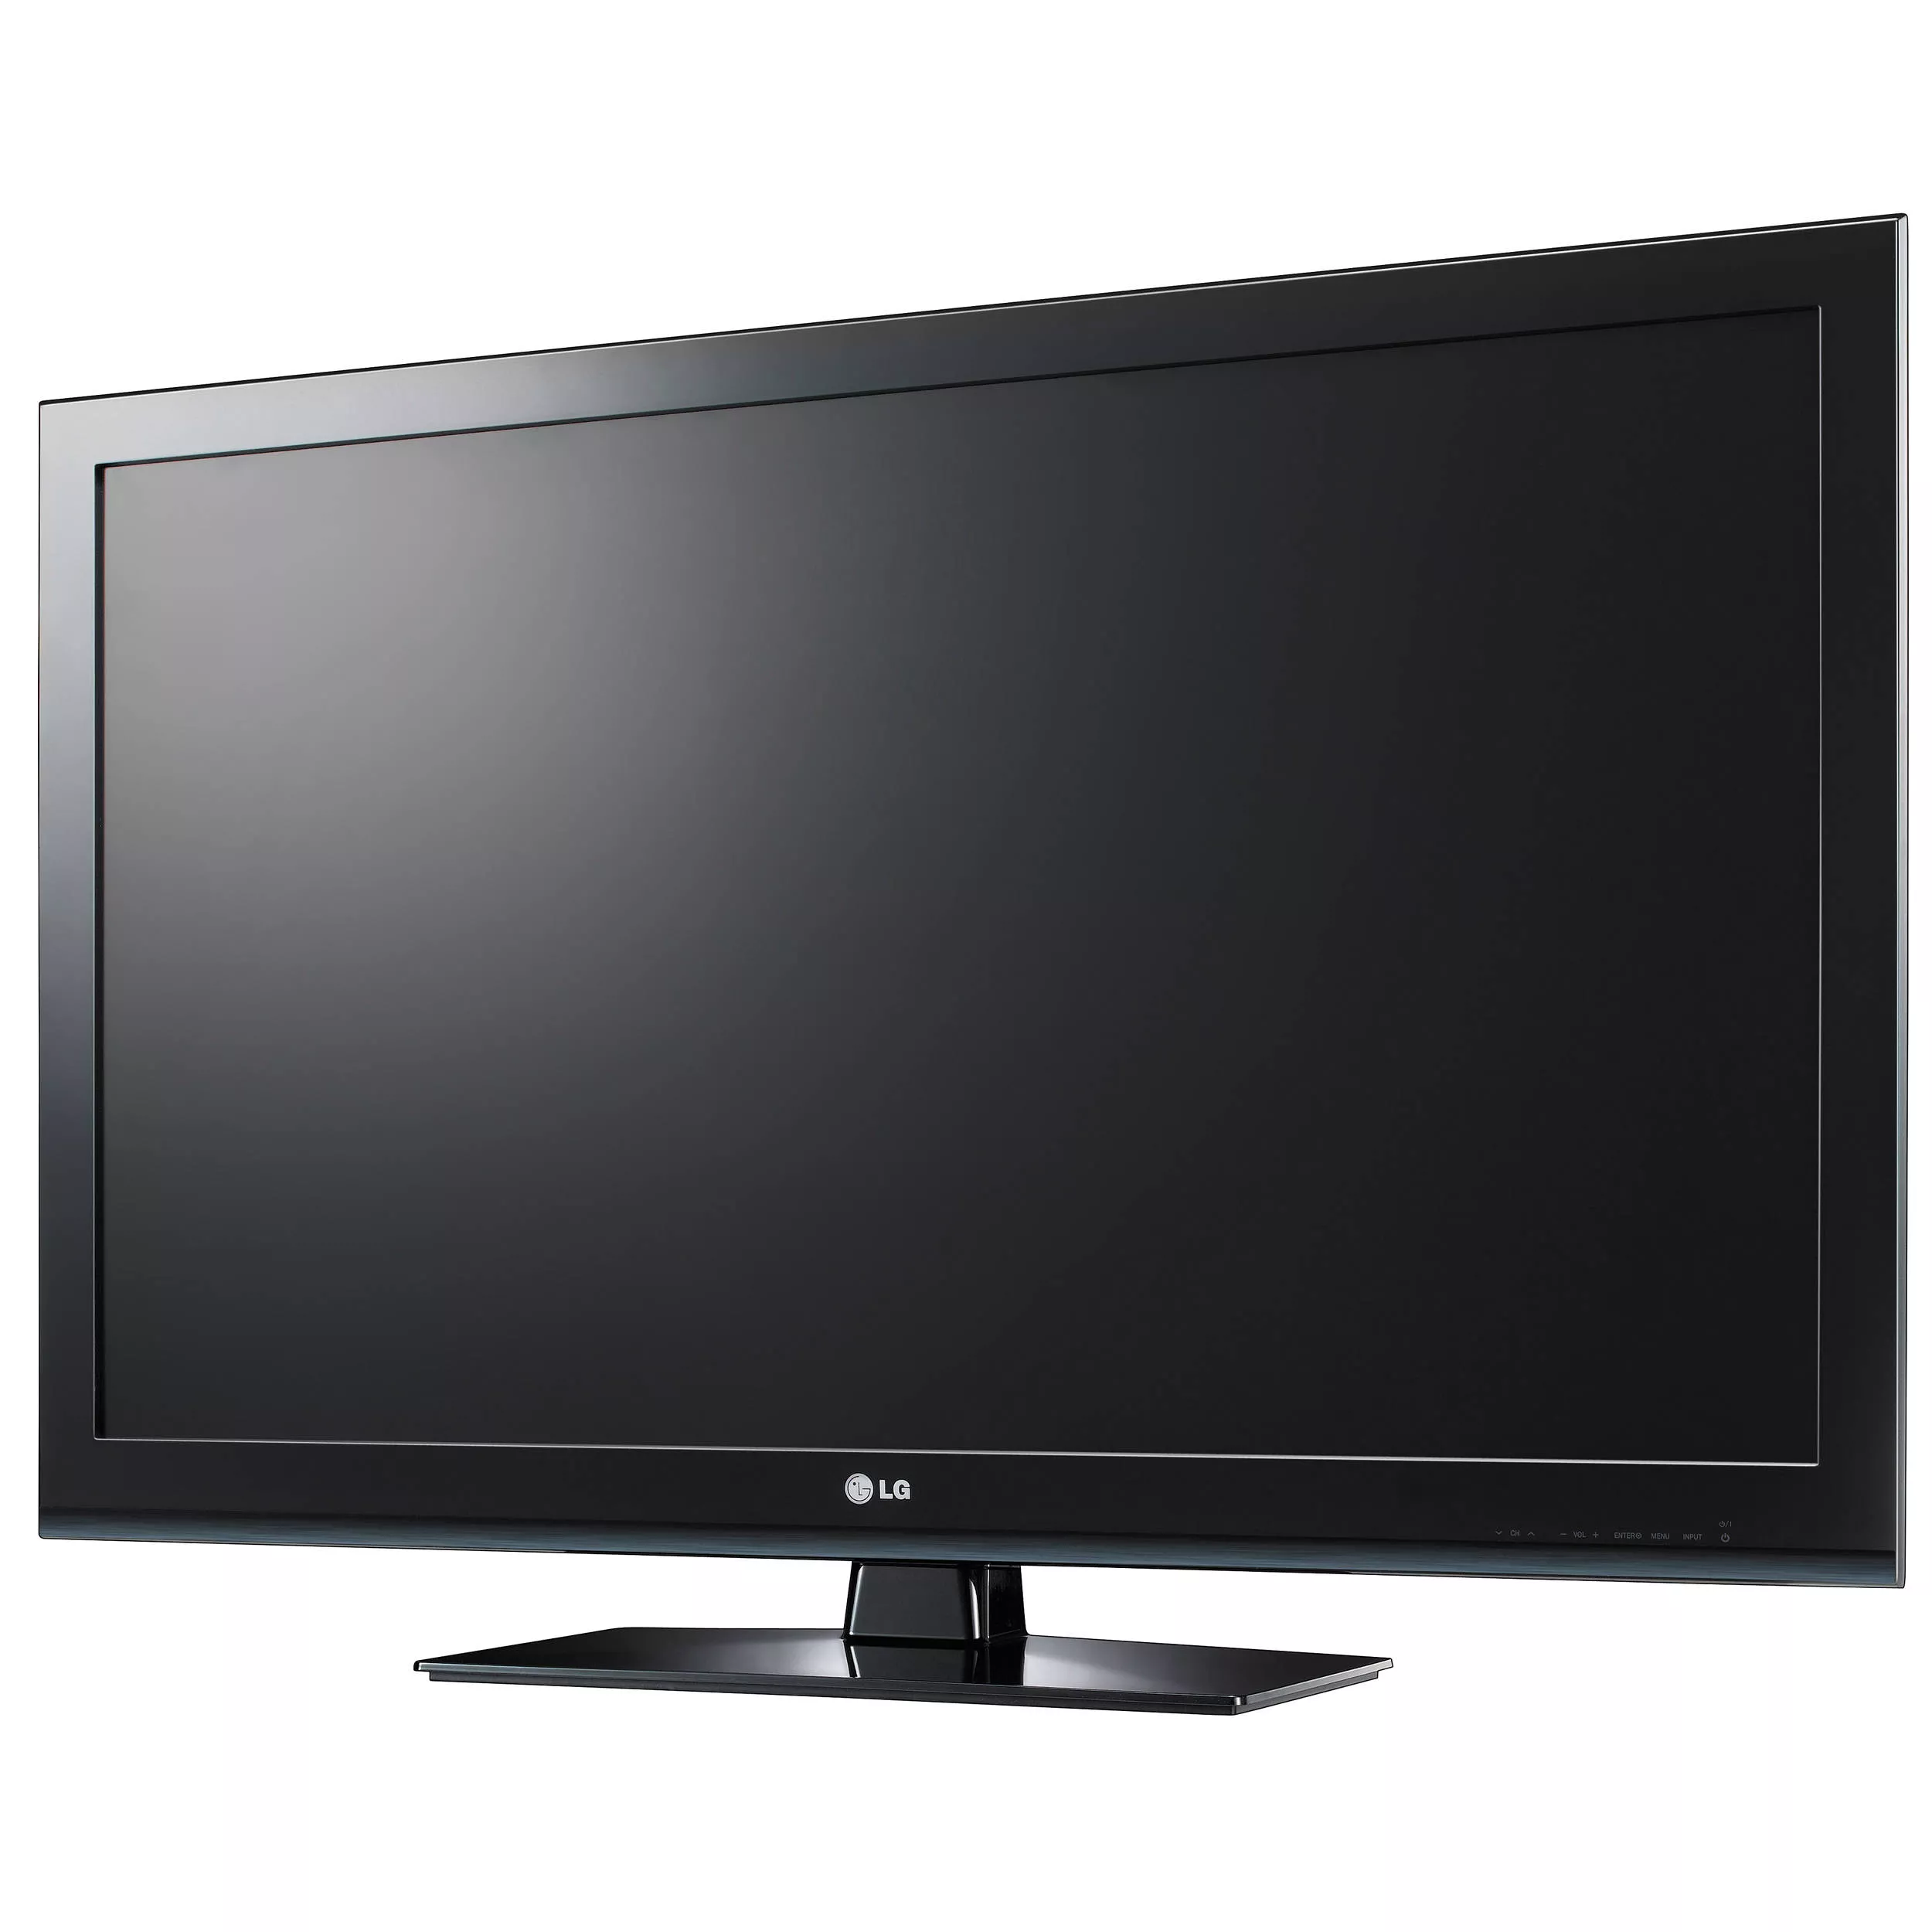 LG 22LT560C 22 inch LCD TV Monitor HDMI RGB No Remote